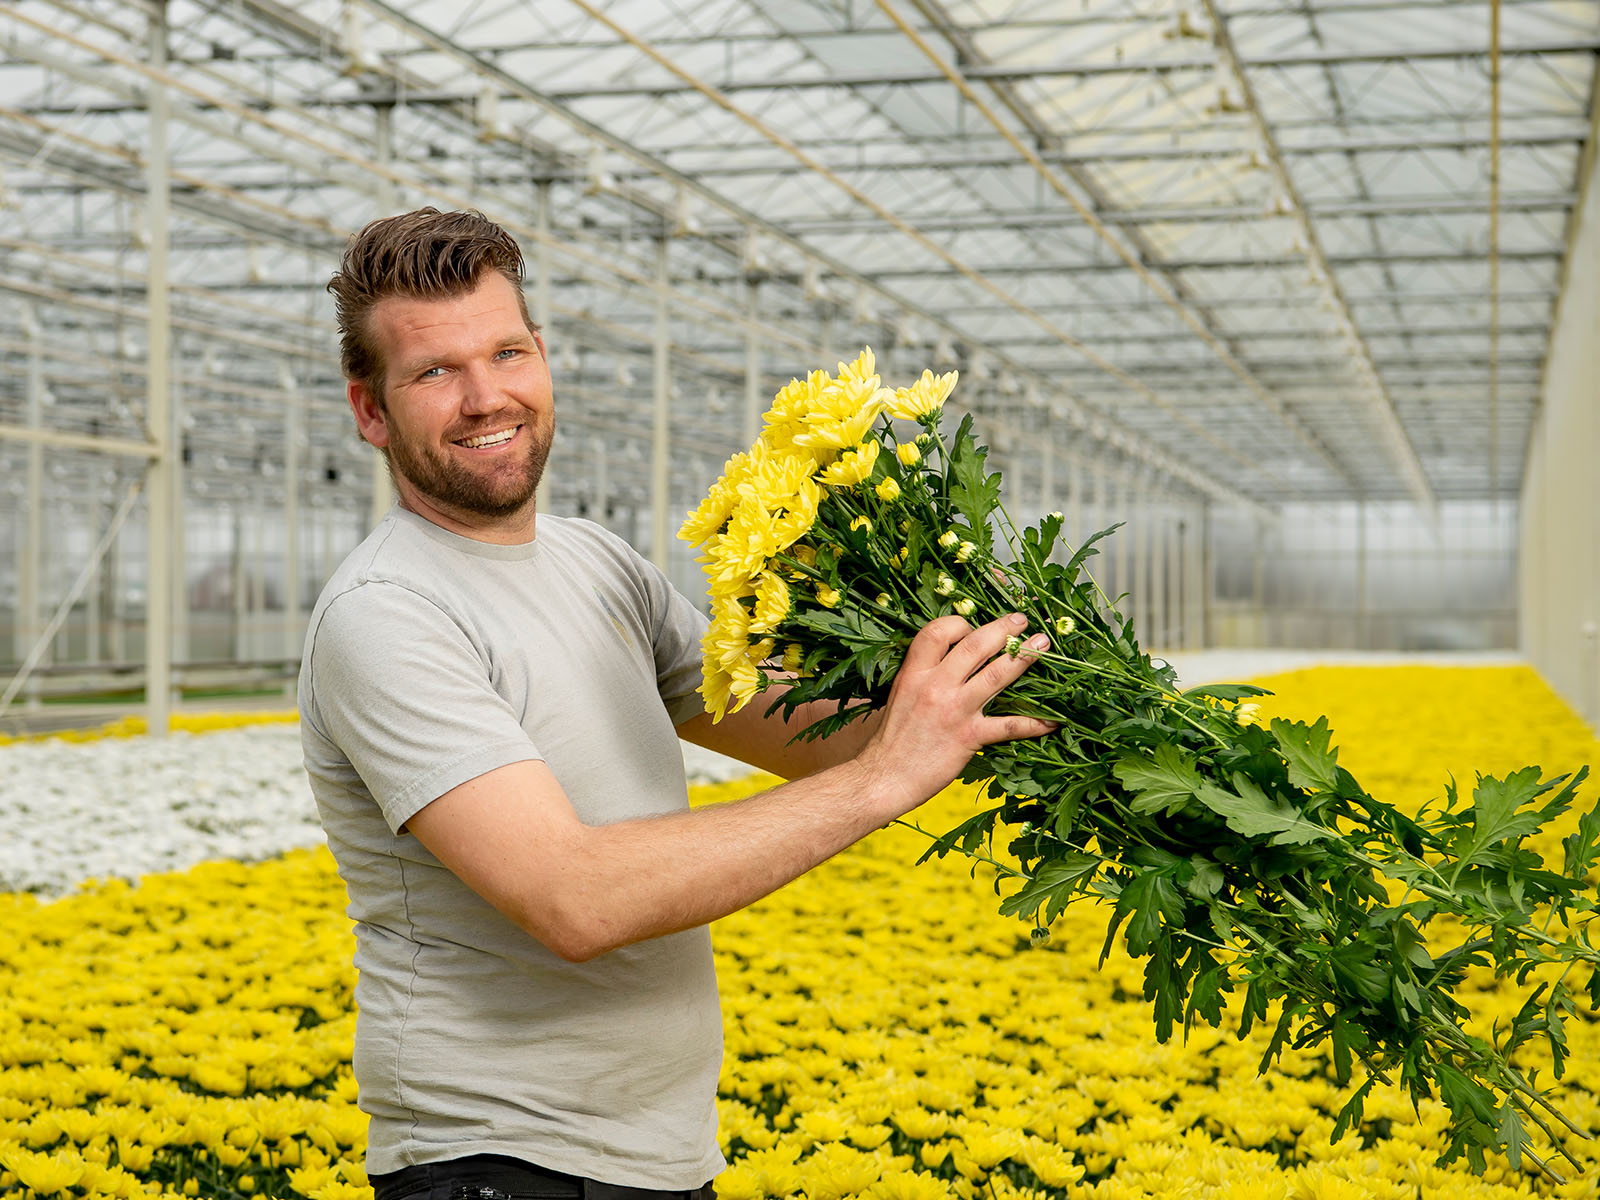 Decorum grower Van Dijk Flowers on Thursd